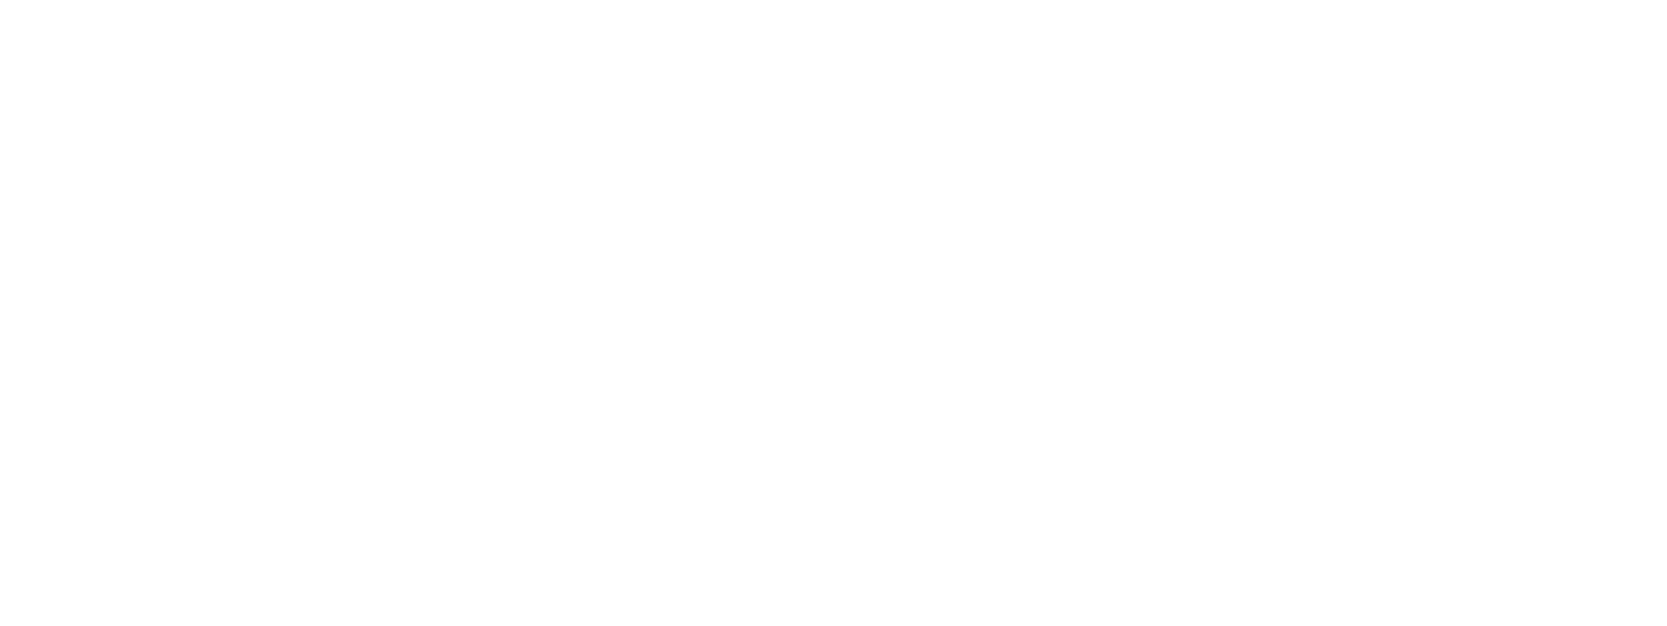 TakingITGlobal